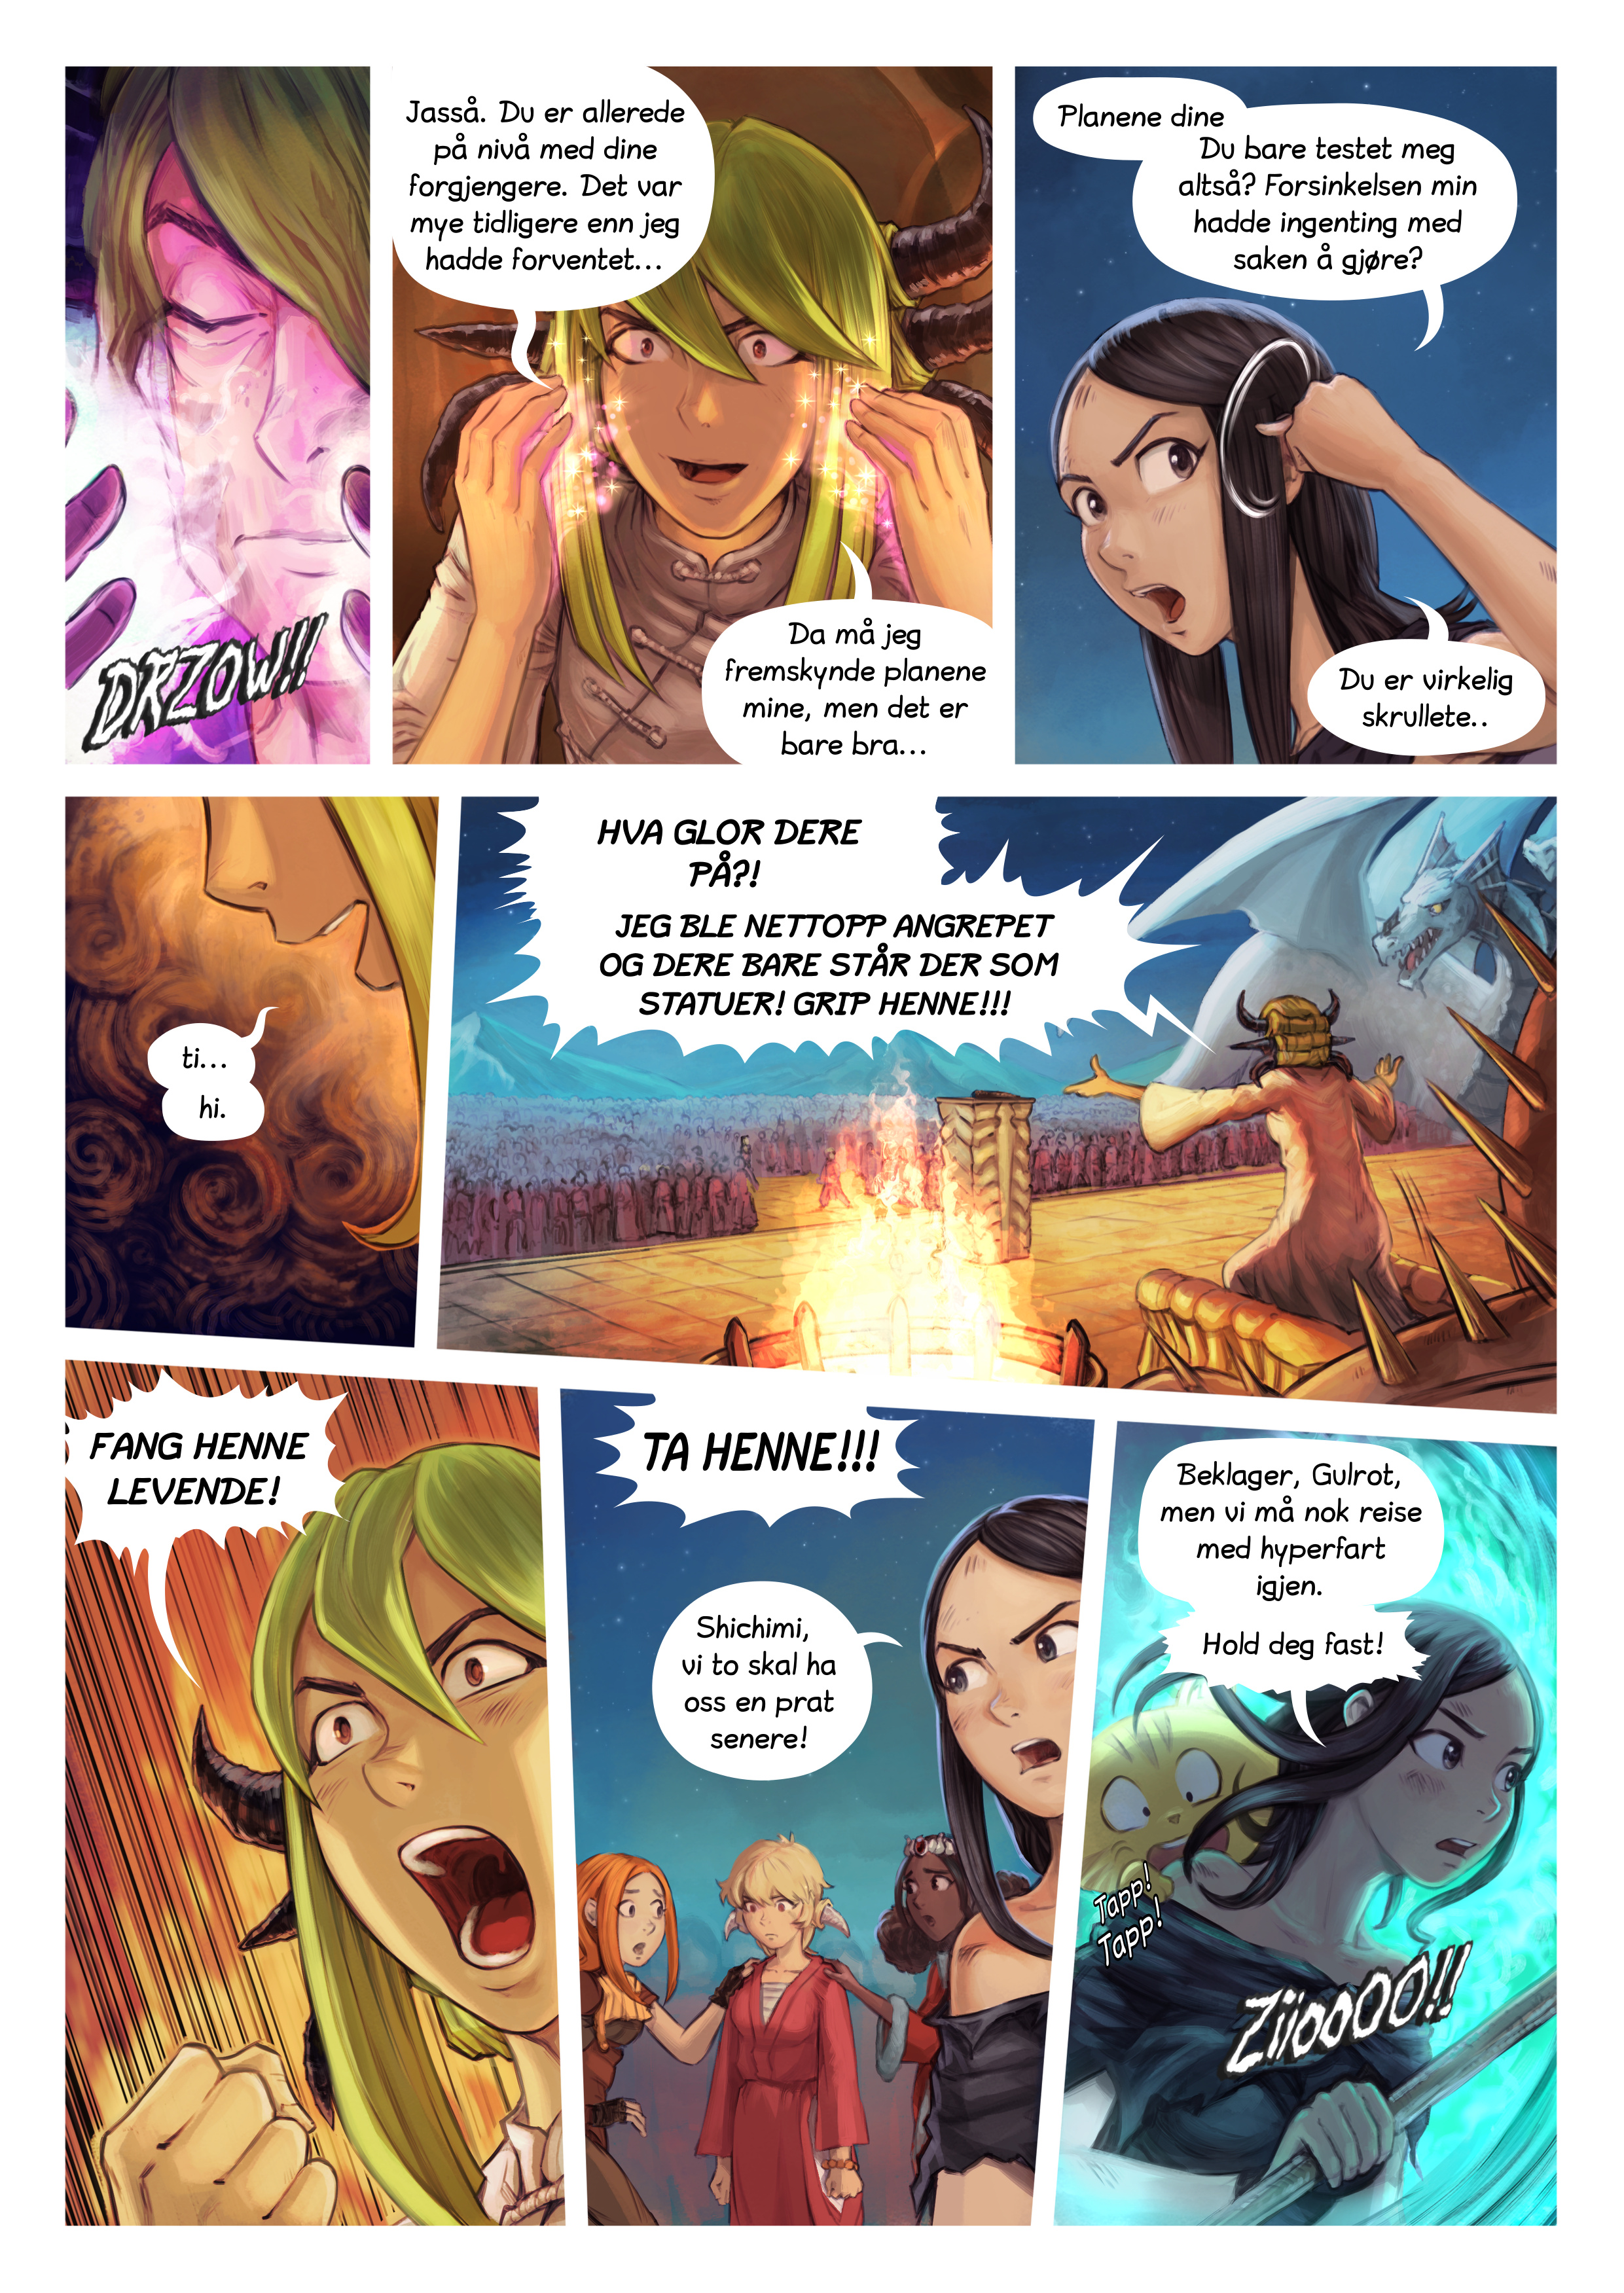 Episode 34: Shichimi slås til ridder, Page 9